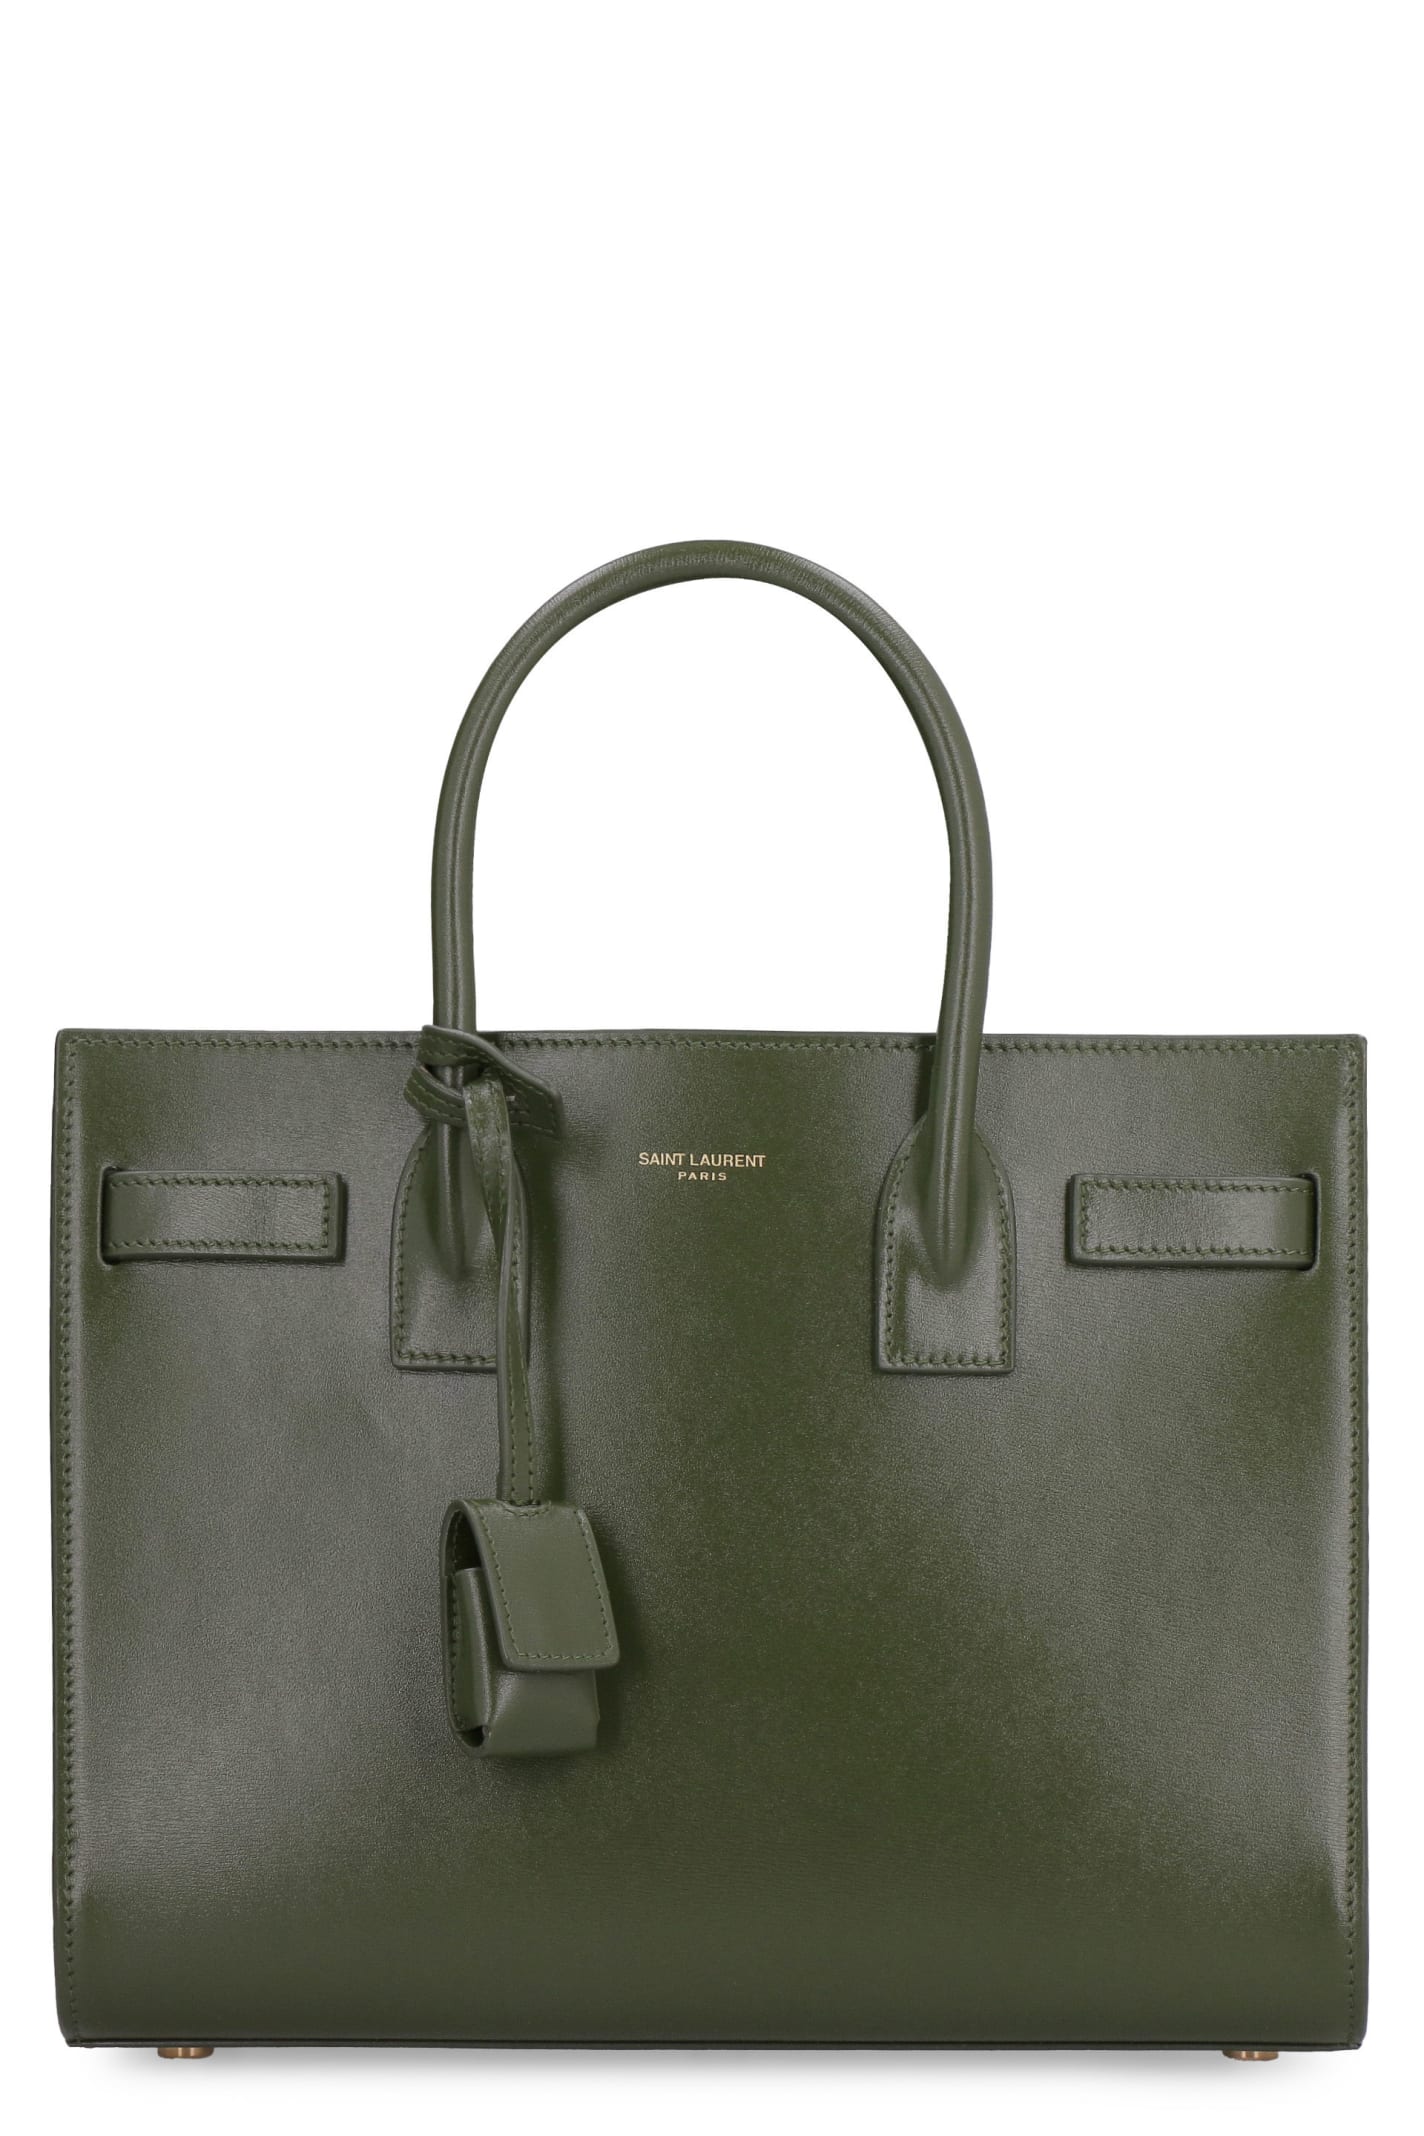 Saint Laurent Sac De Jour Leather Mini Handbag